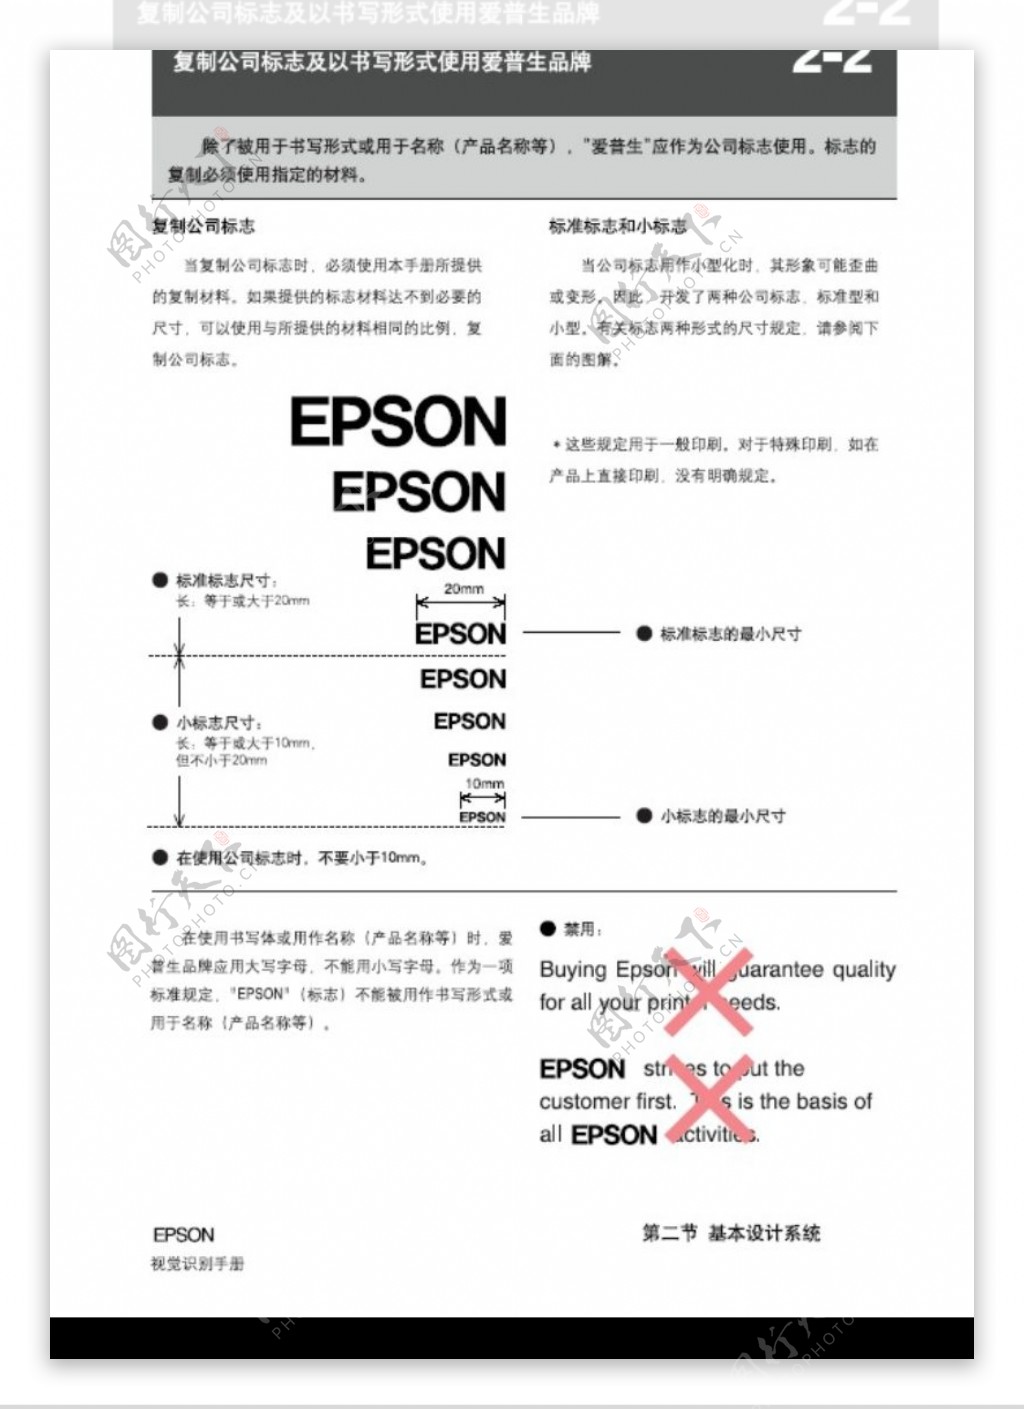 EPSON0011